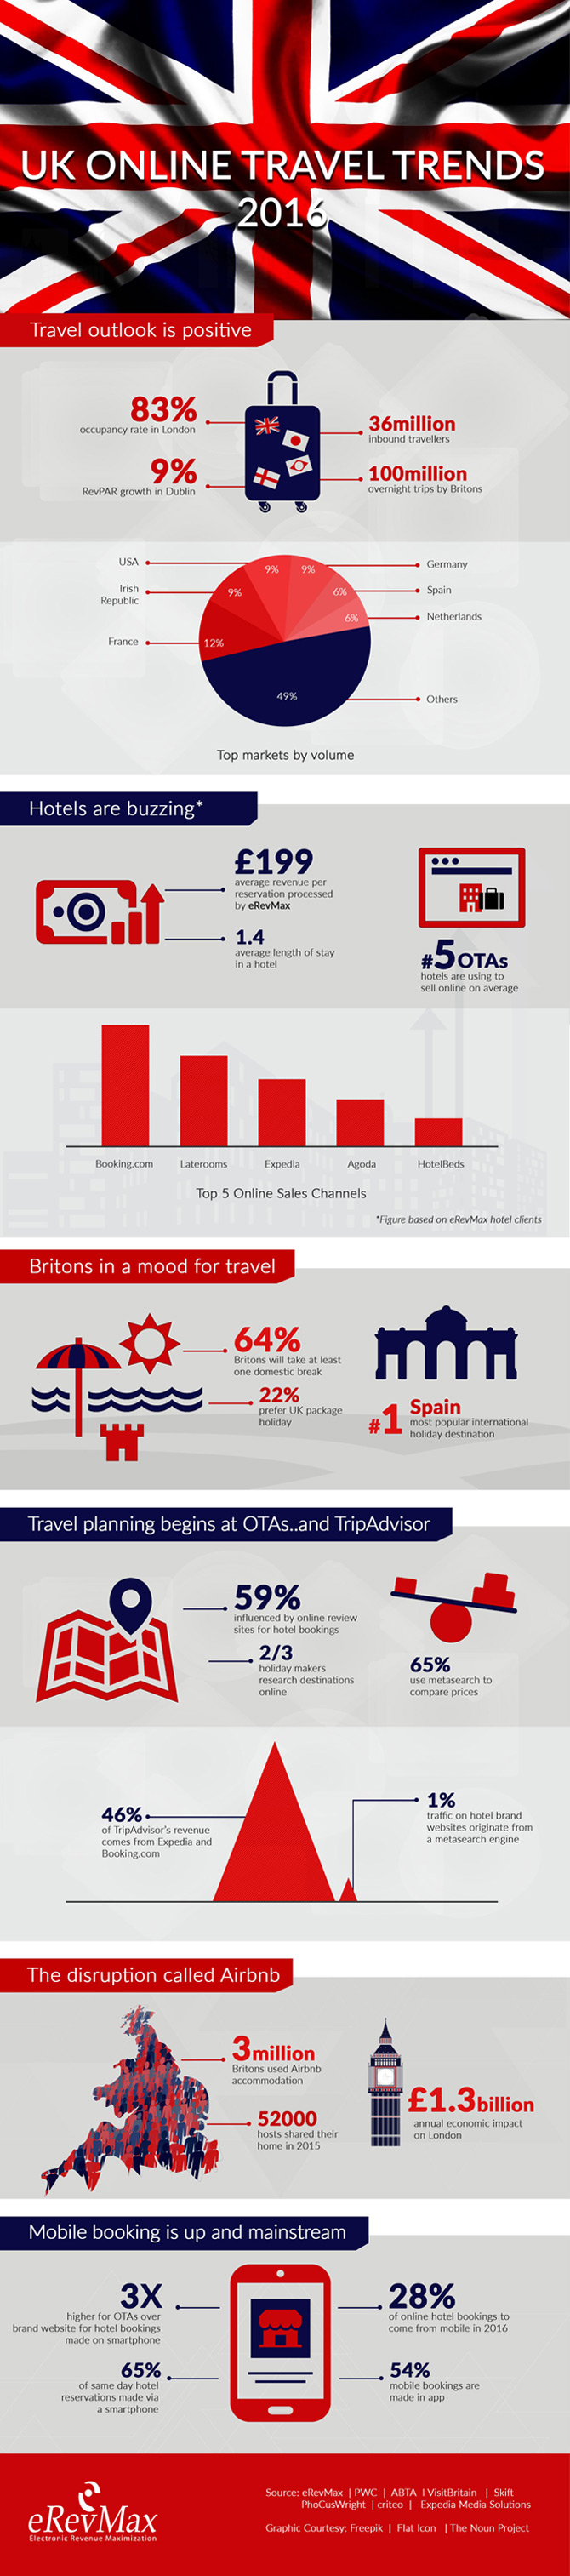 UK Online Travel Trends 2016